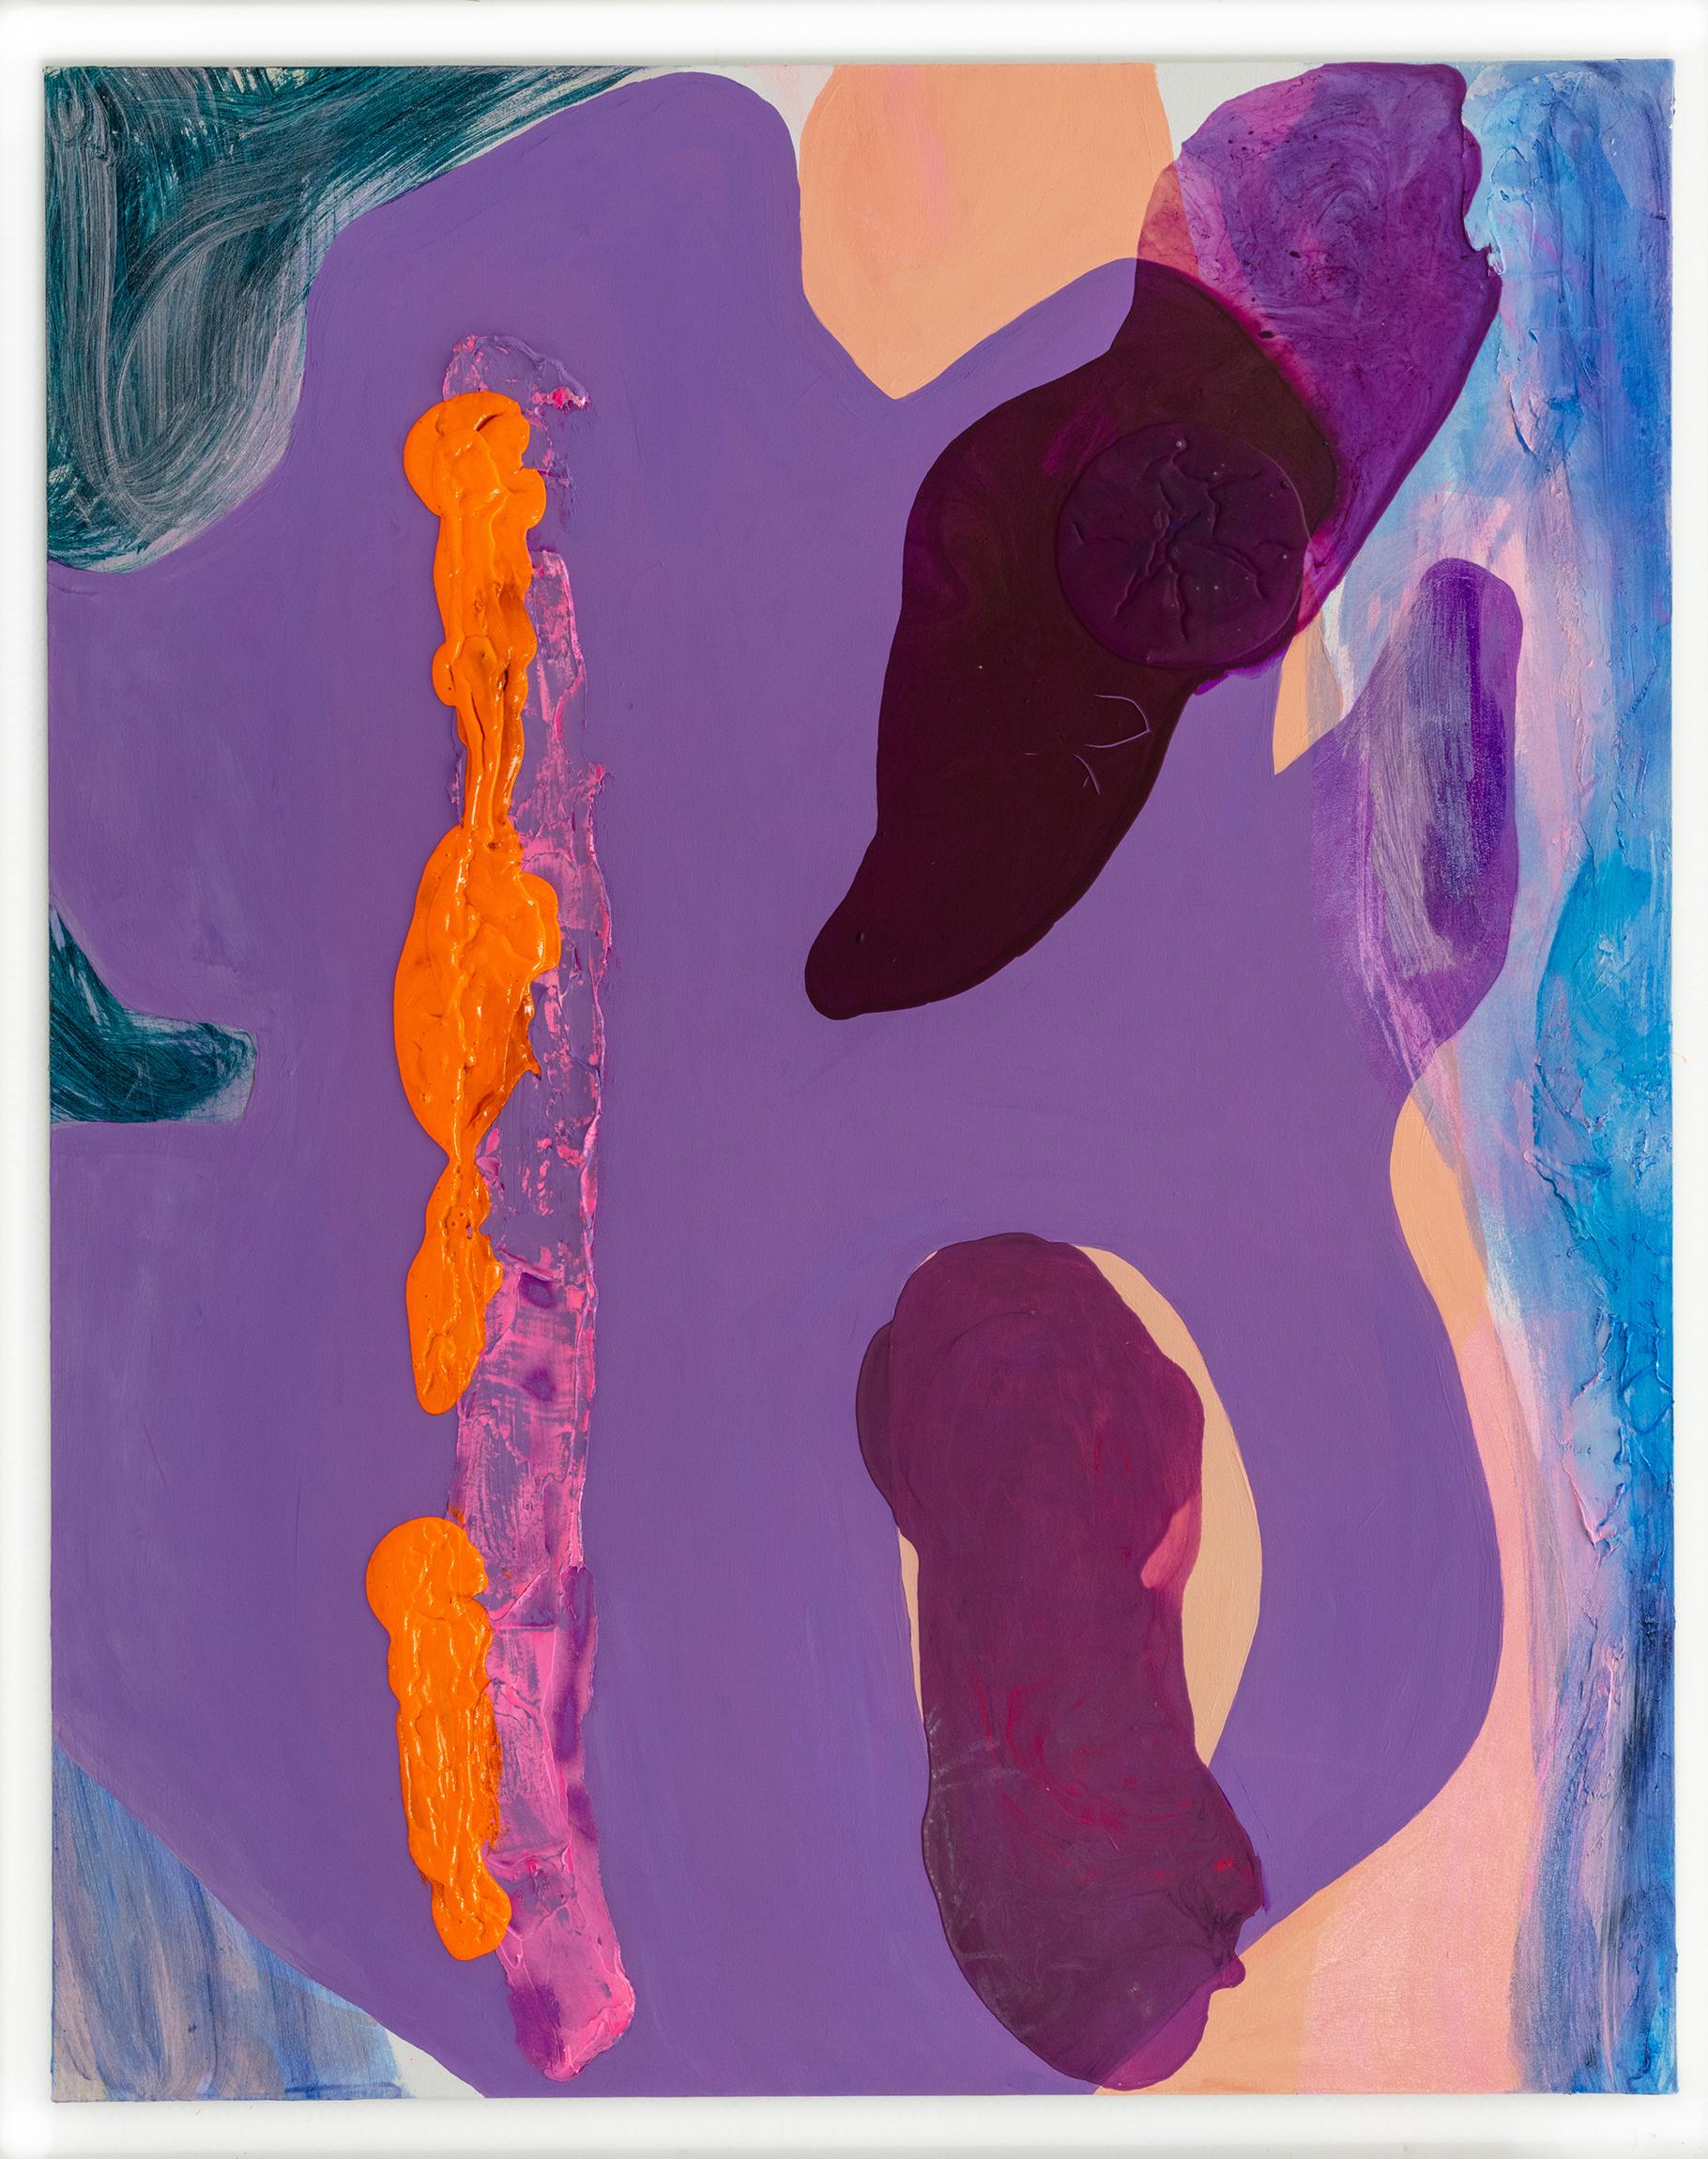 Abstract Painting Debra Drexler - Peinture abstraite contemporaine à grande échelle « River Ocean Lake », violette et orange